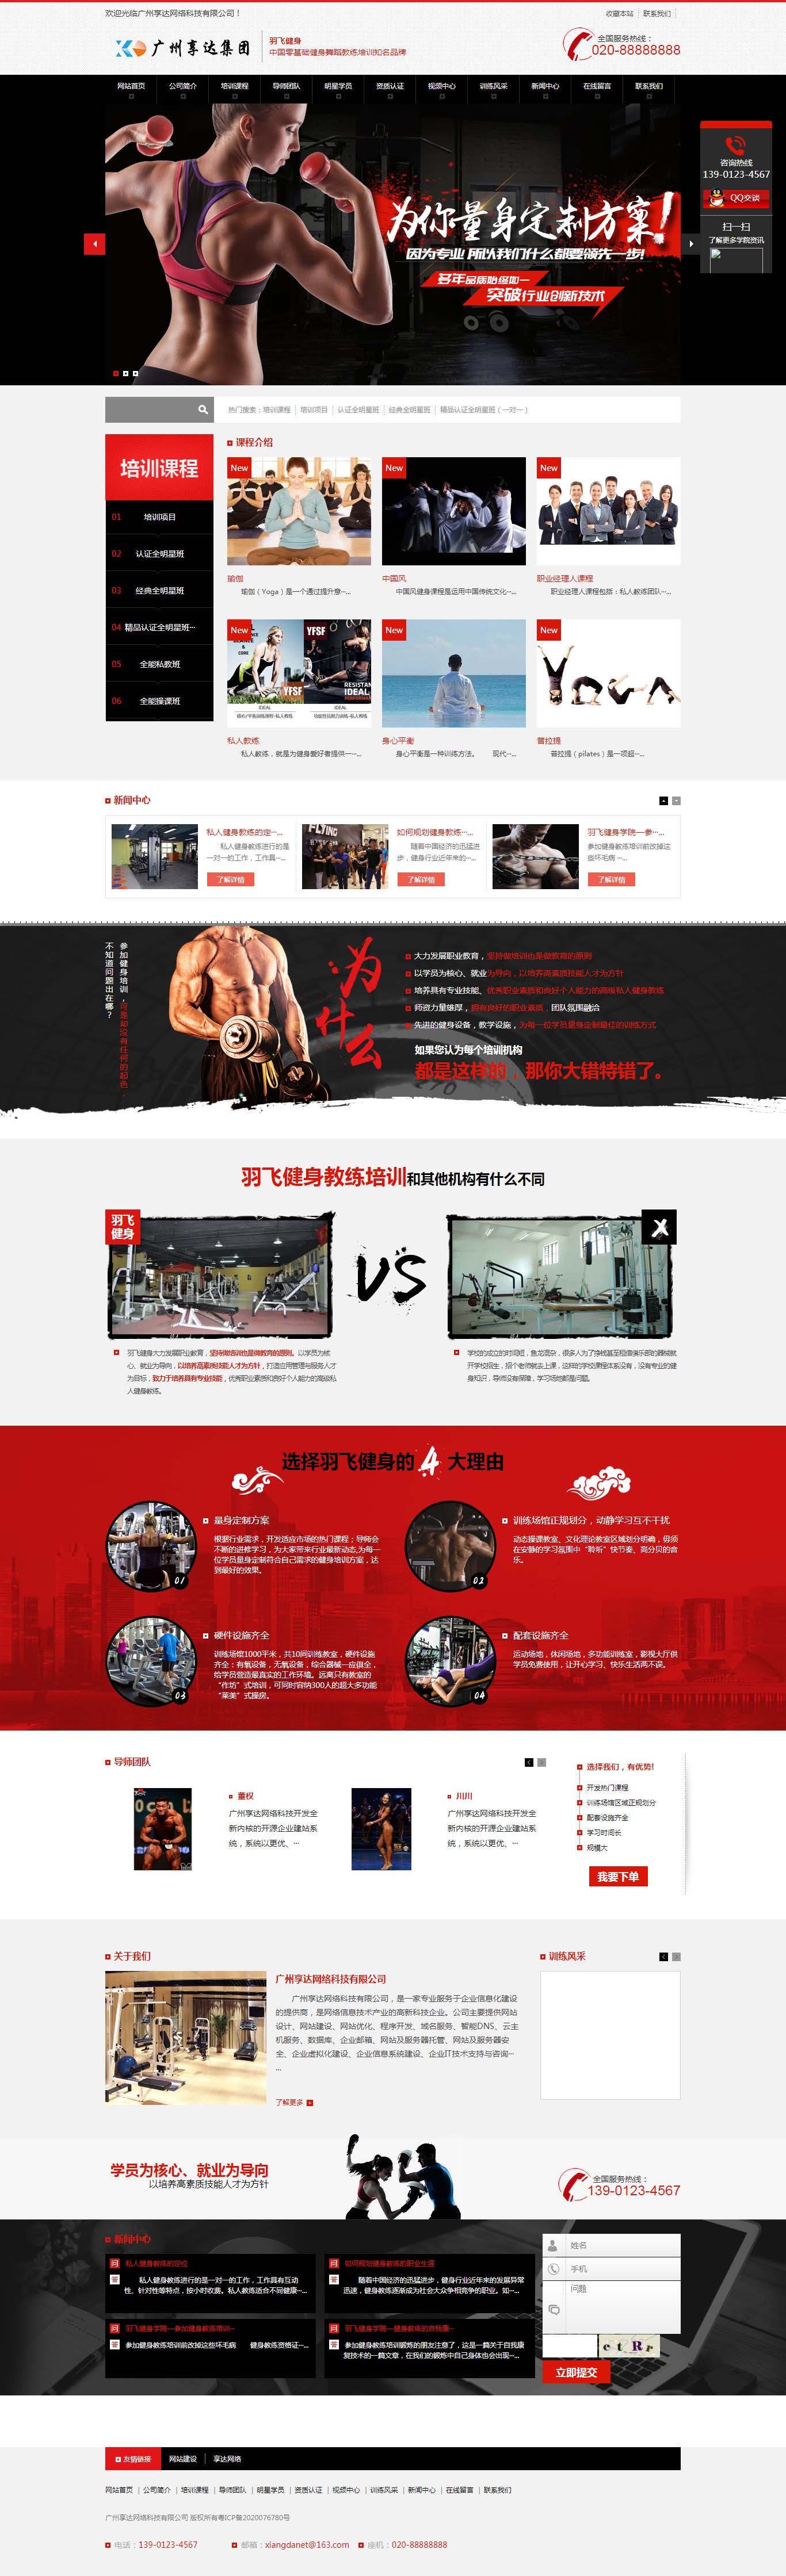 济南健身会所网站设计 | 健身俱乐部网站制作